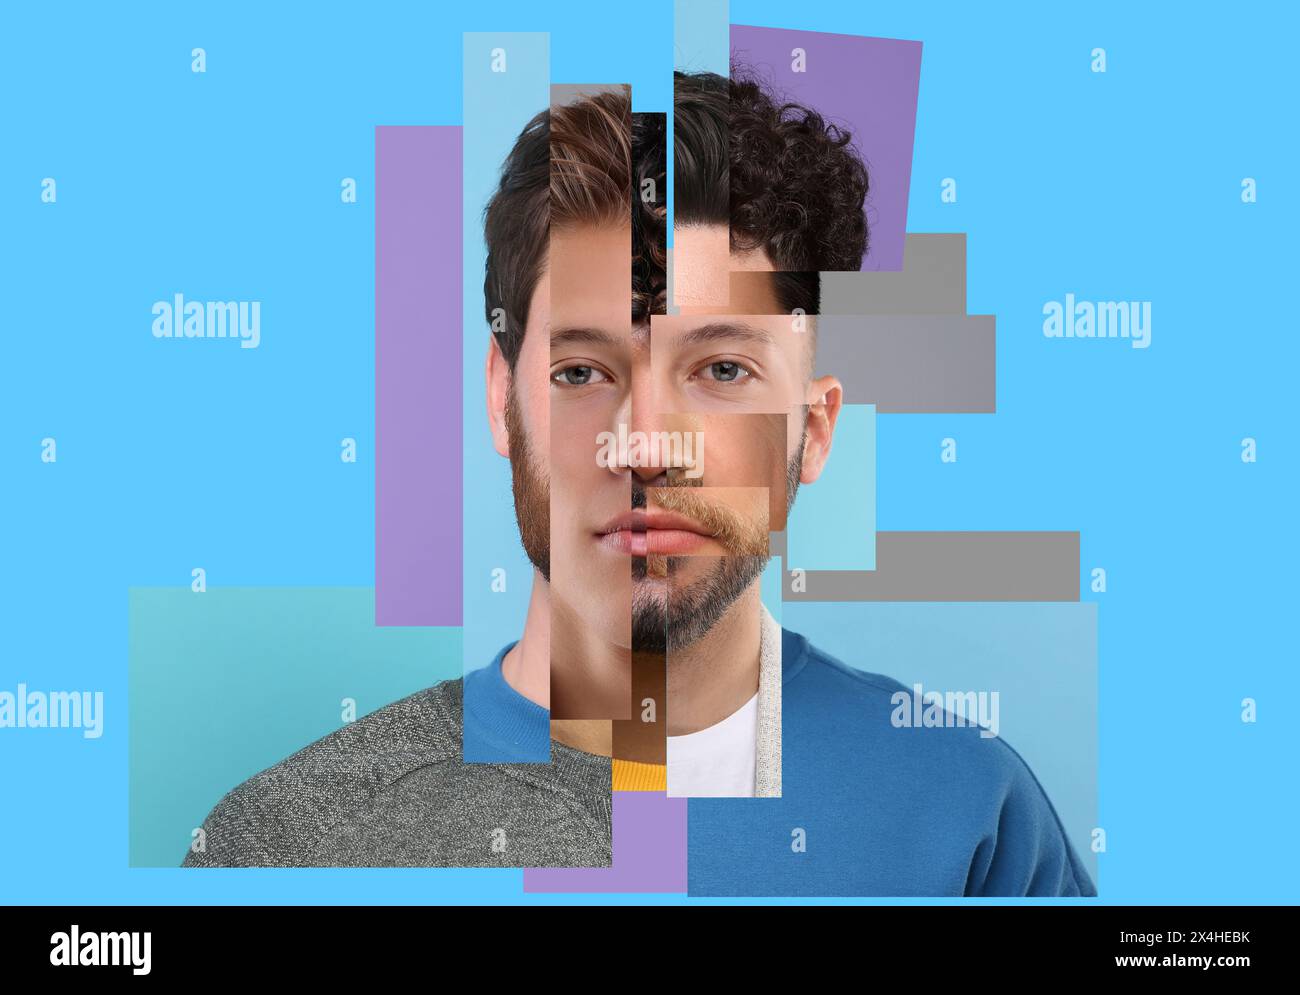 Kombiniertes Porträt eines Mannes auf hellblauem Hintergrund. Collage mit Teilen von Fotos verschiedener Personen Stockfoto